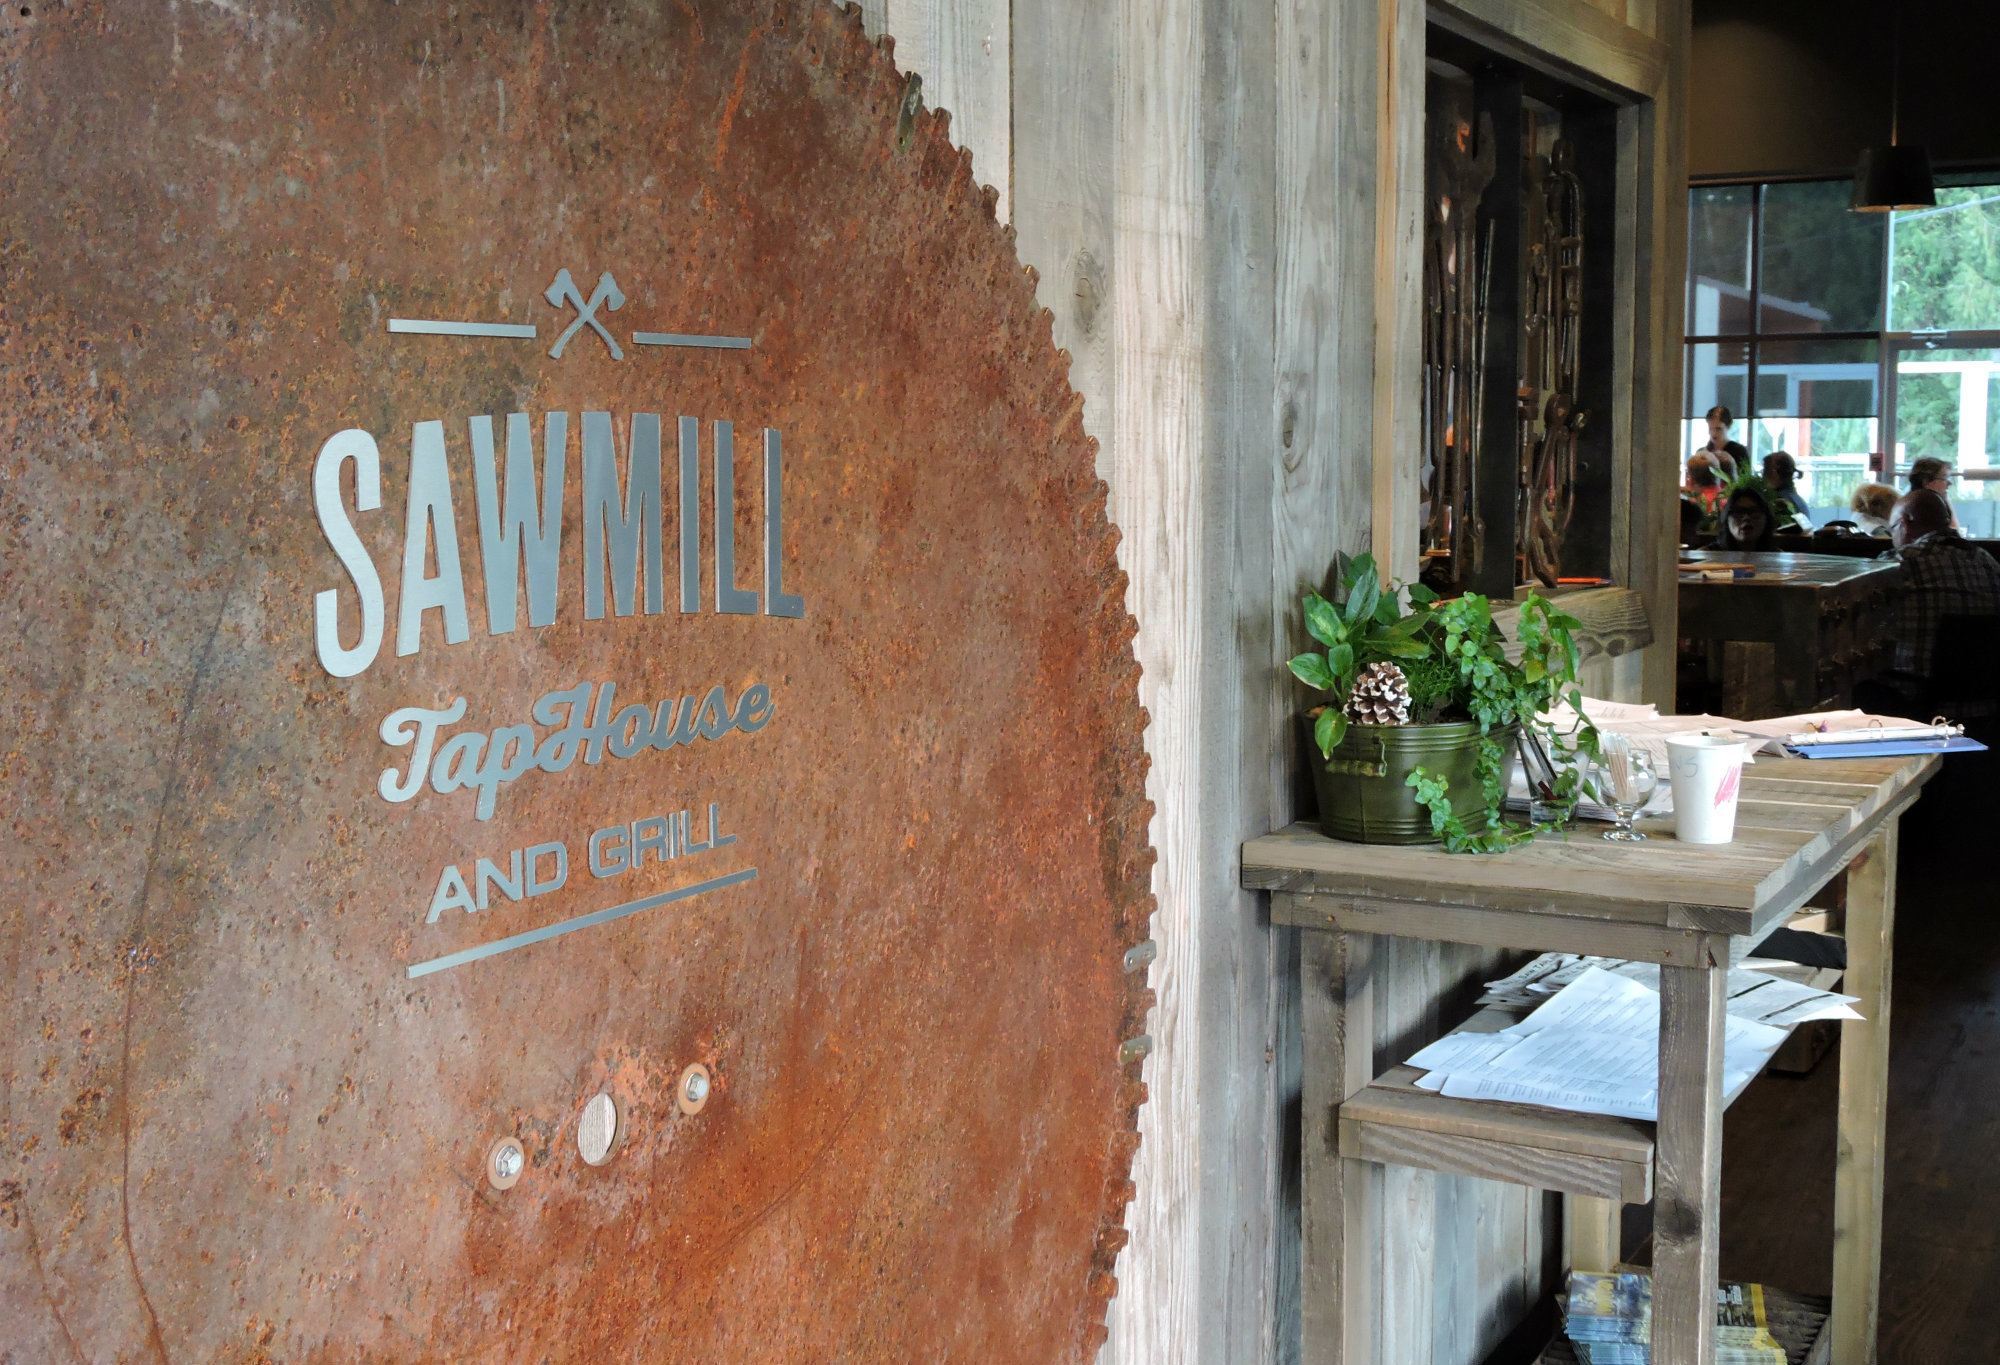 Sawmill Taphouse, Sawmill restaurant, Sawmill Chemainus, Sawmill Taphouse Chemainus, Chemainus Restaurants, Cowichan Valley Restaurants.